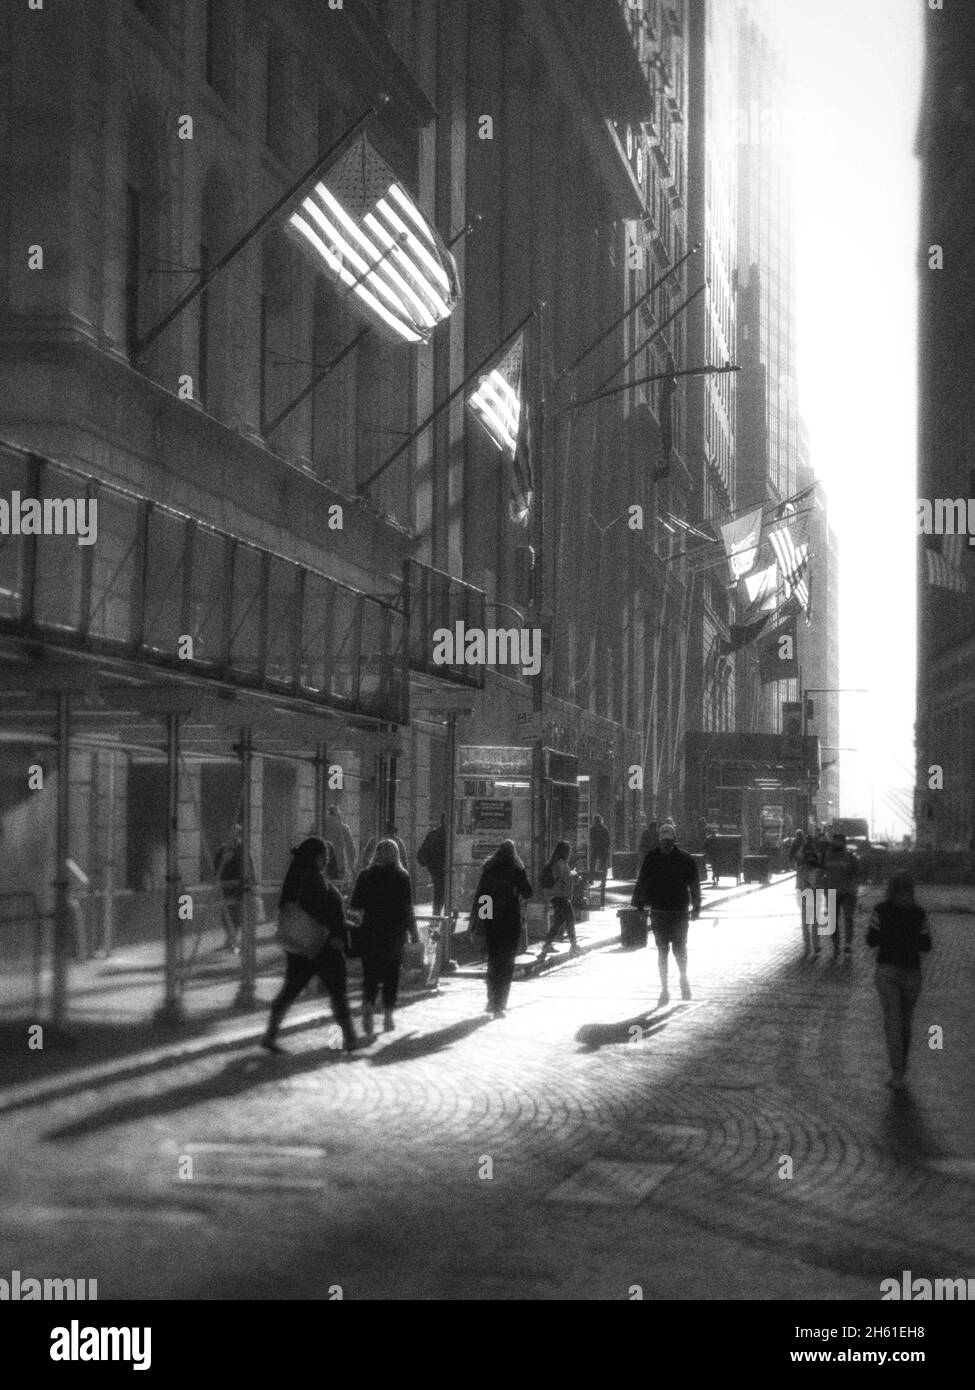 Silouette di persone su una strada acciottolata in basso Manahattan vicino alla Borsa di New York. Bandiere americane retroilluminate sugli edifici Foto Stock